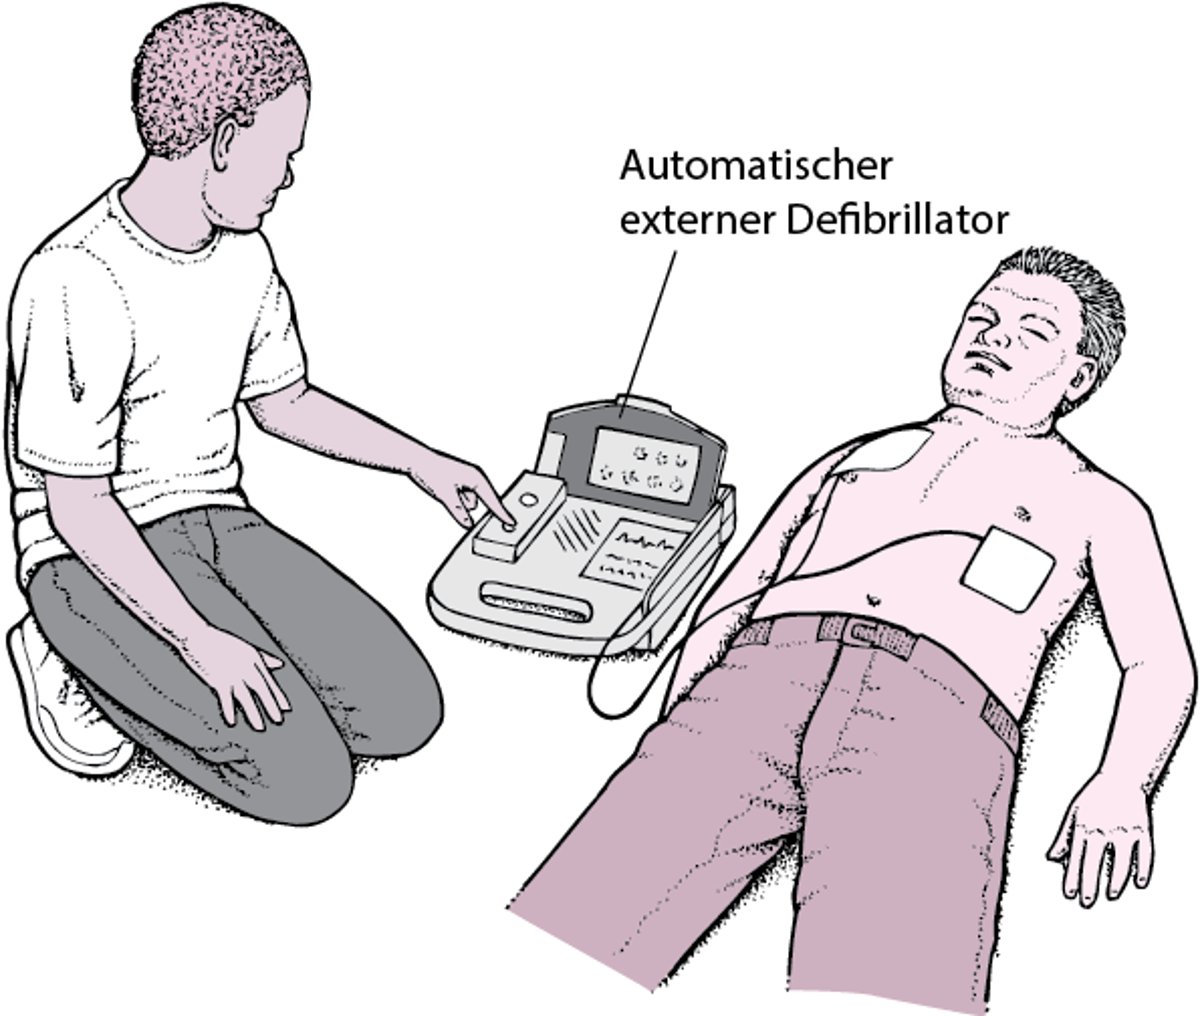 Automatischer externer Defibrillator: Fremdstarten des Herzens